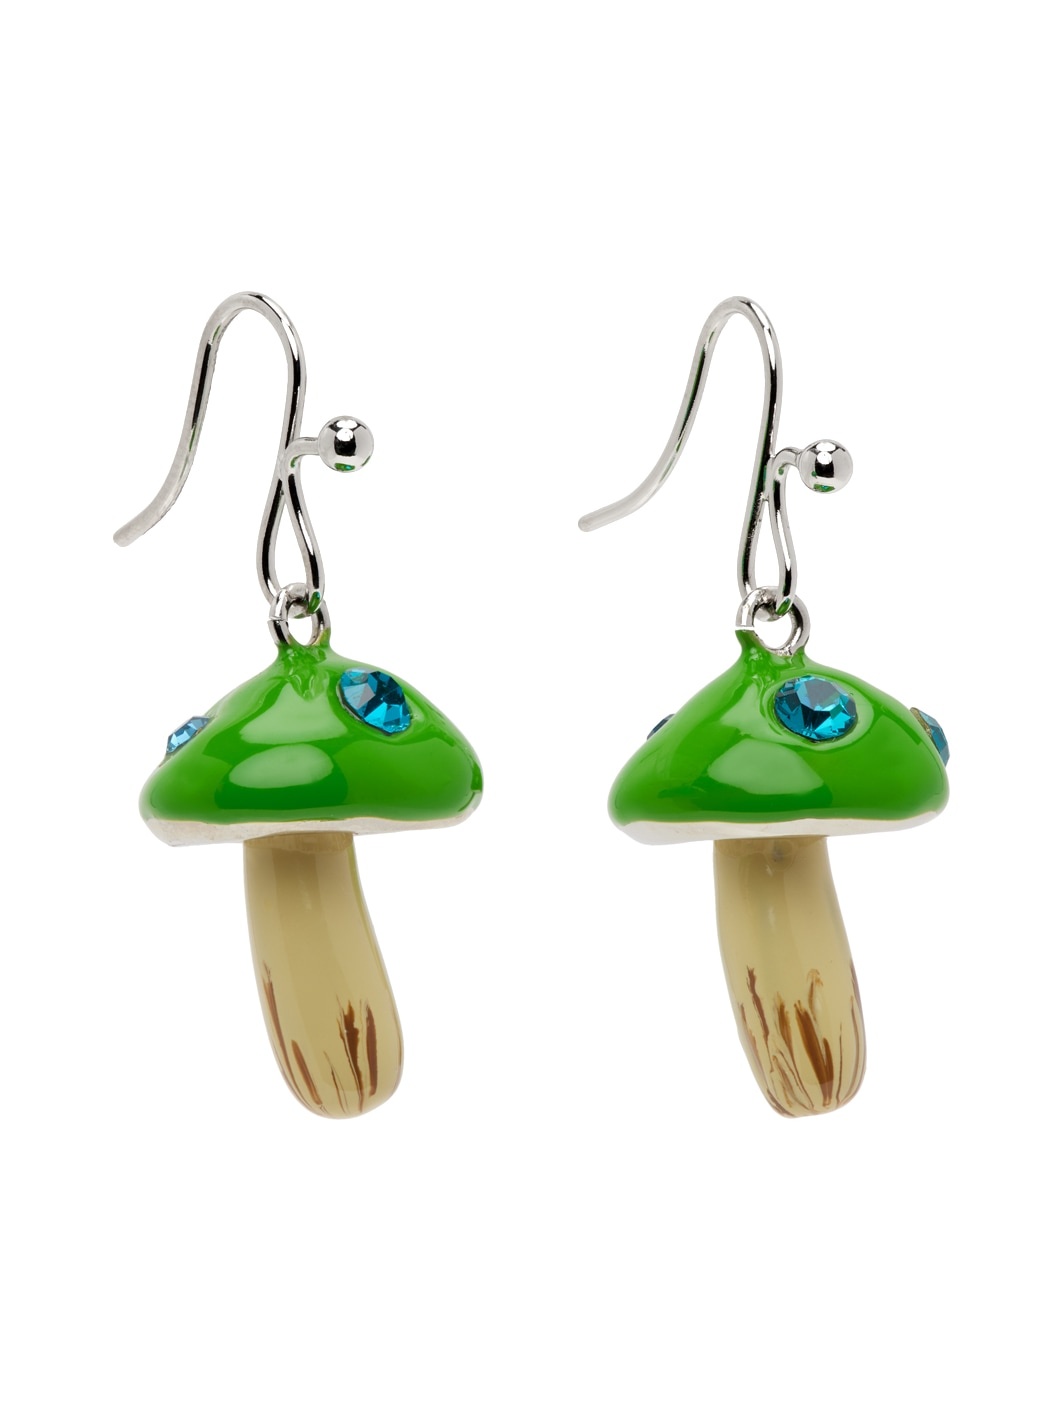 SSENSE Exclusive Green Mushroom Earrings - 2